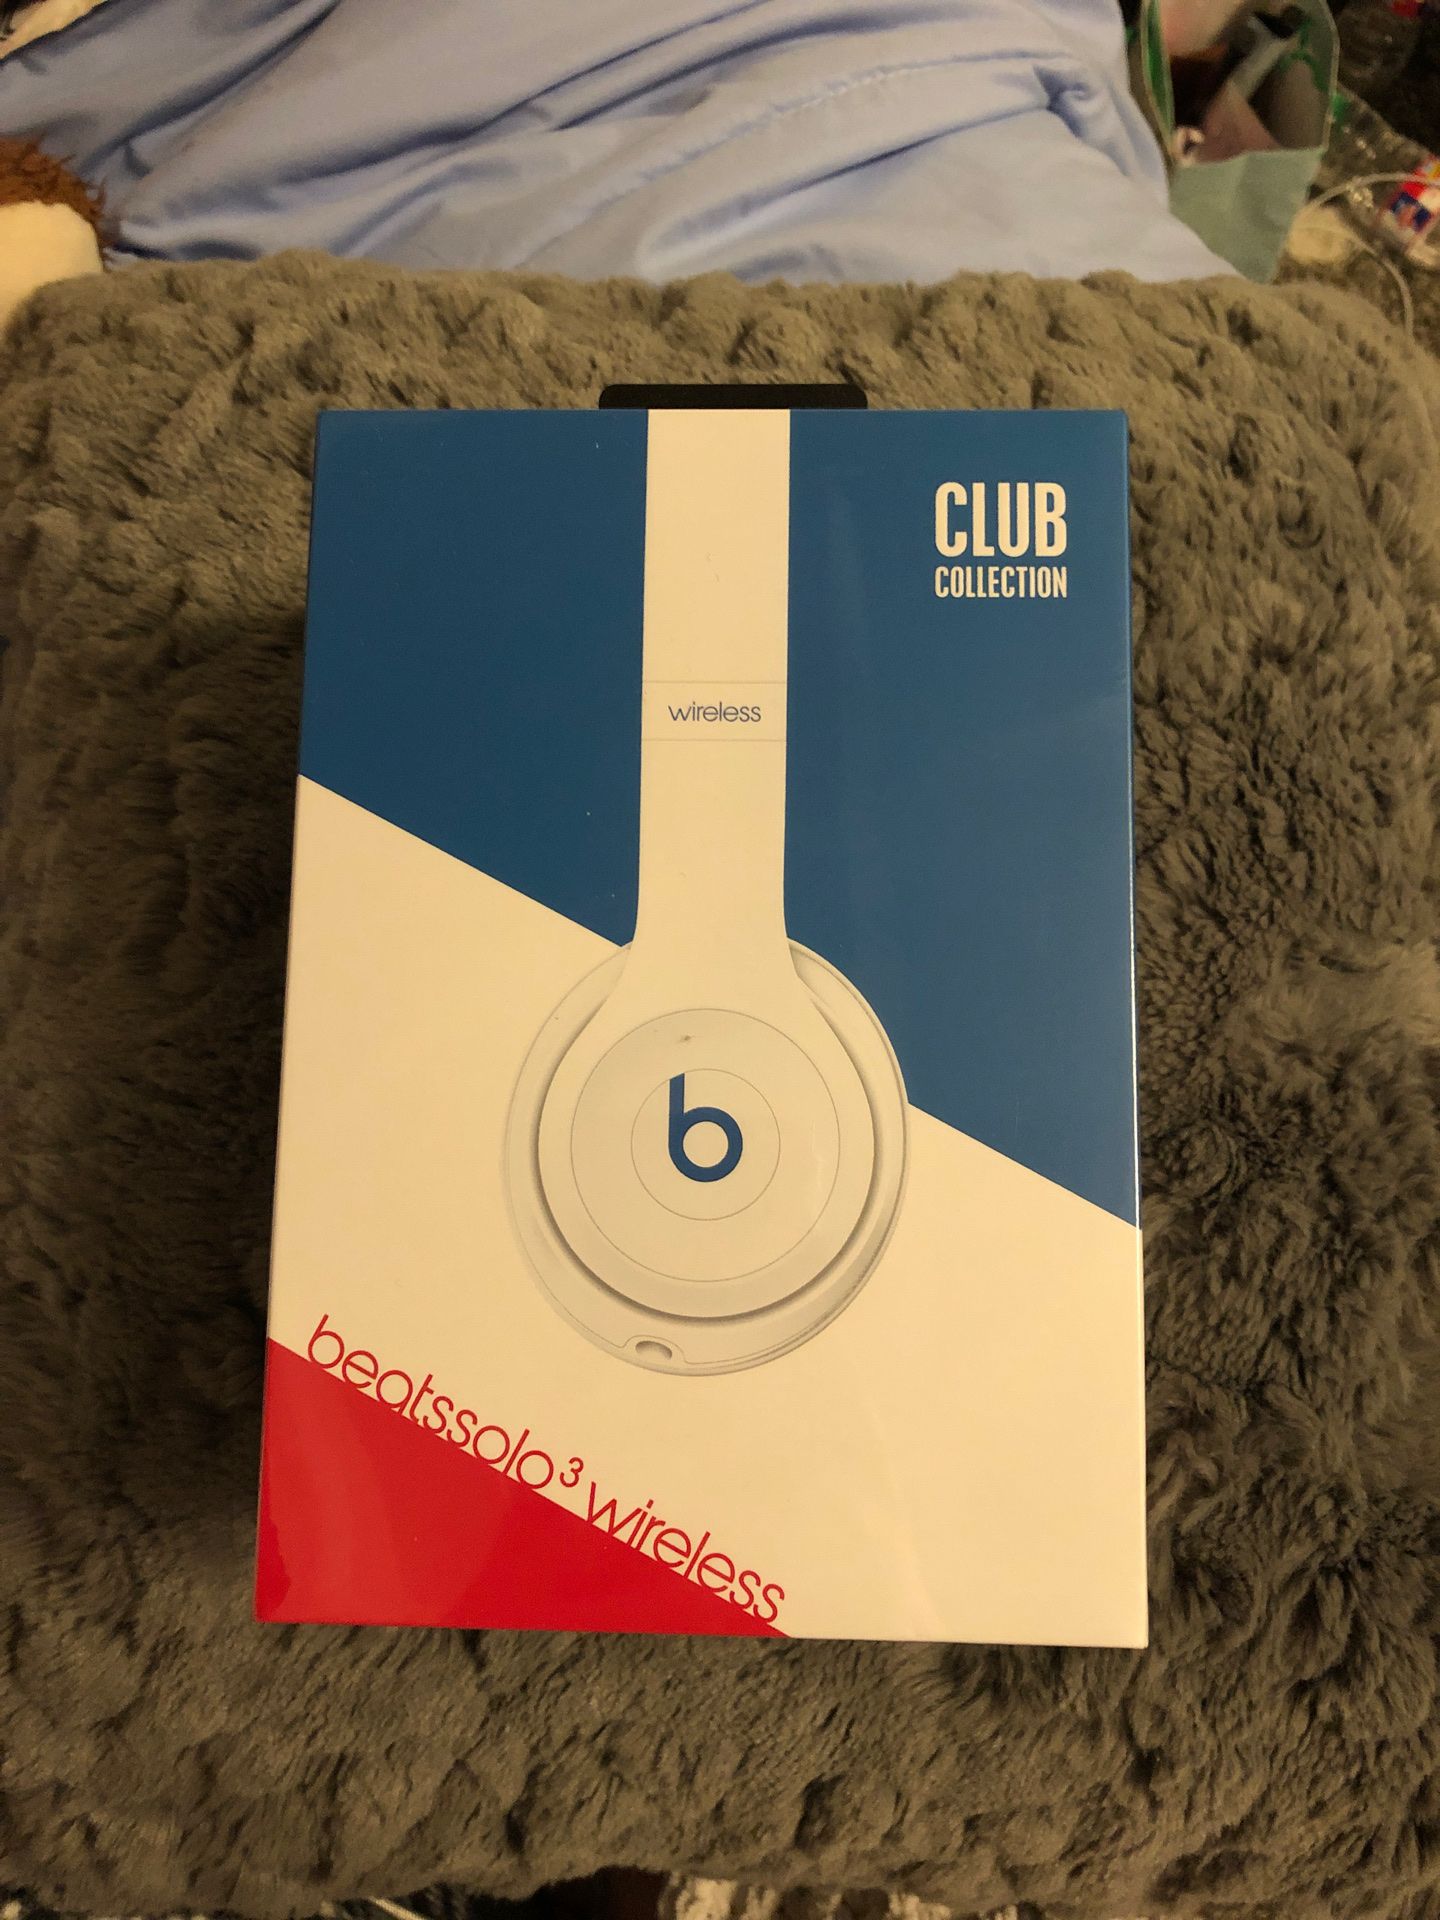 beatssolo3 wireless (club edition—white)